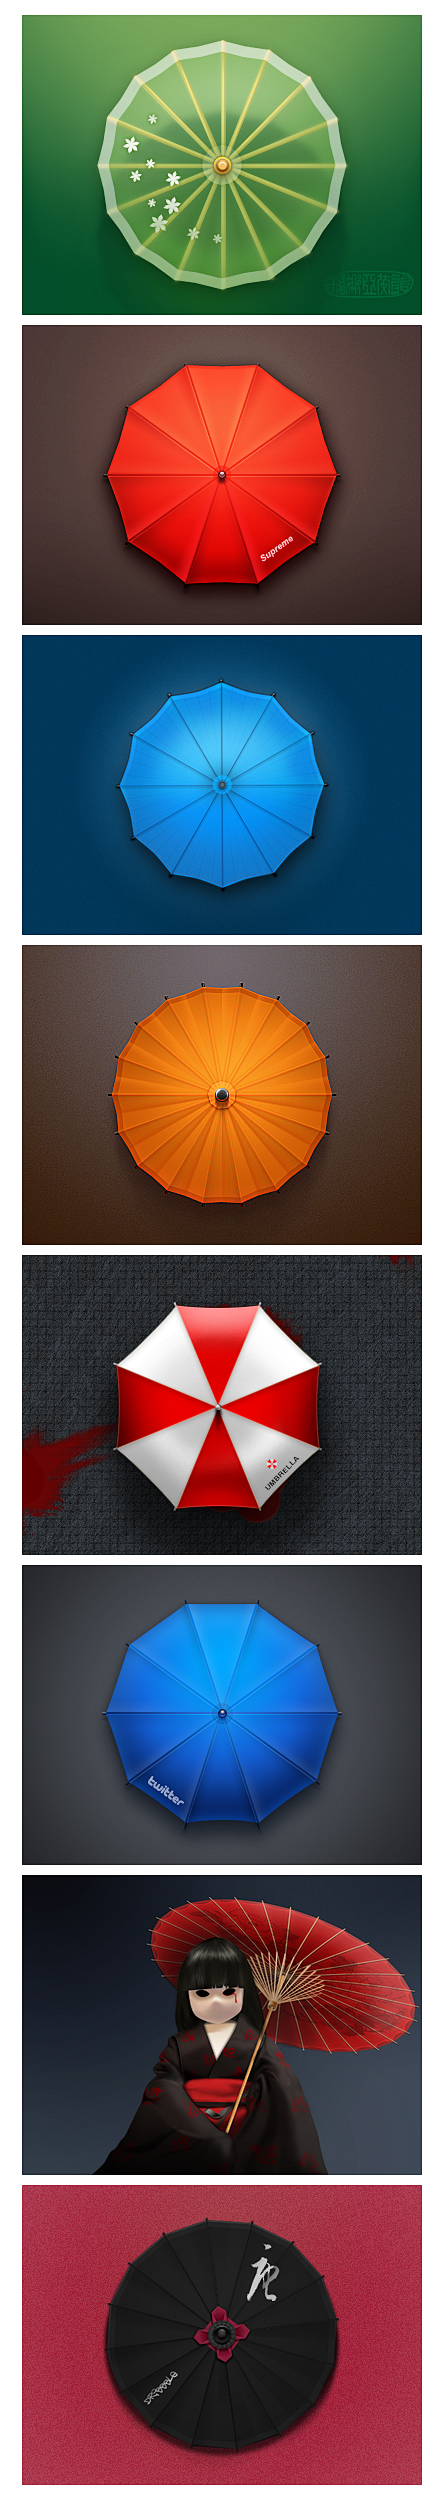 以伞作为元素的优秀ico设计 - Ux创...